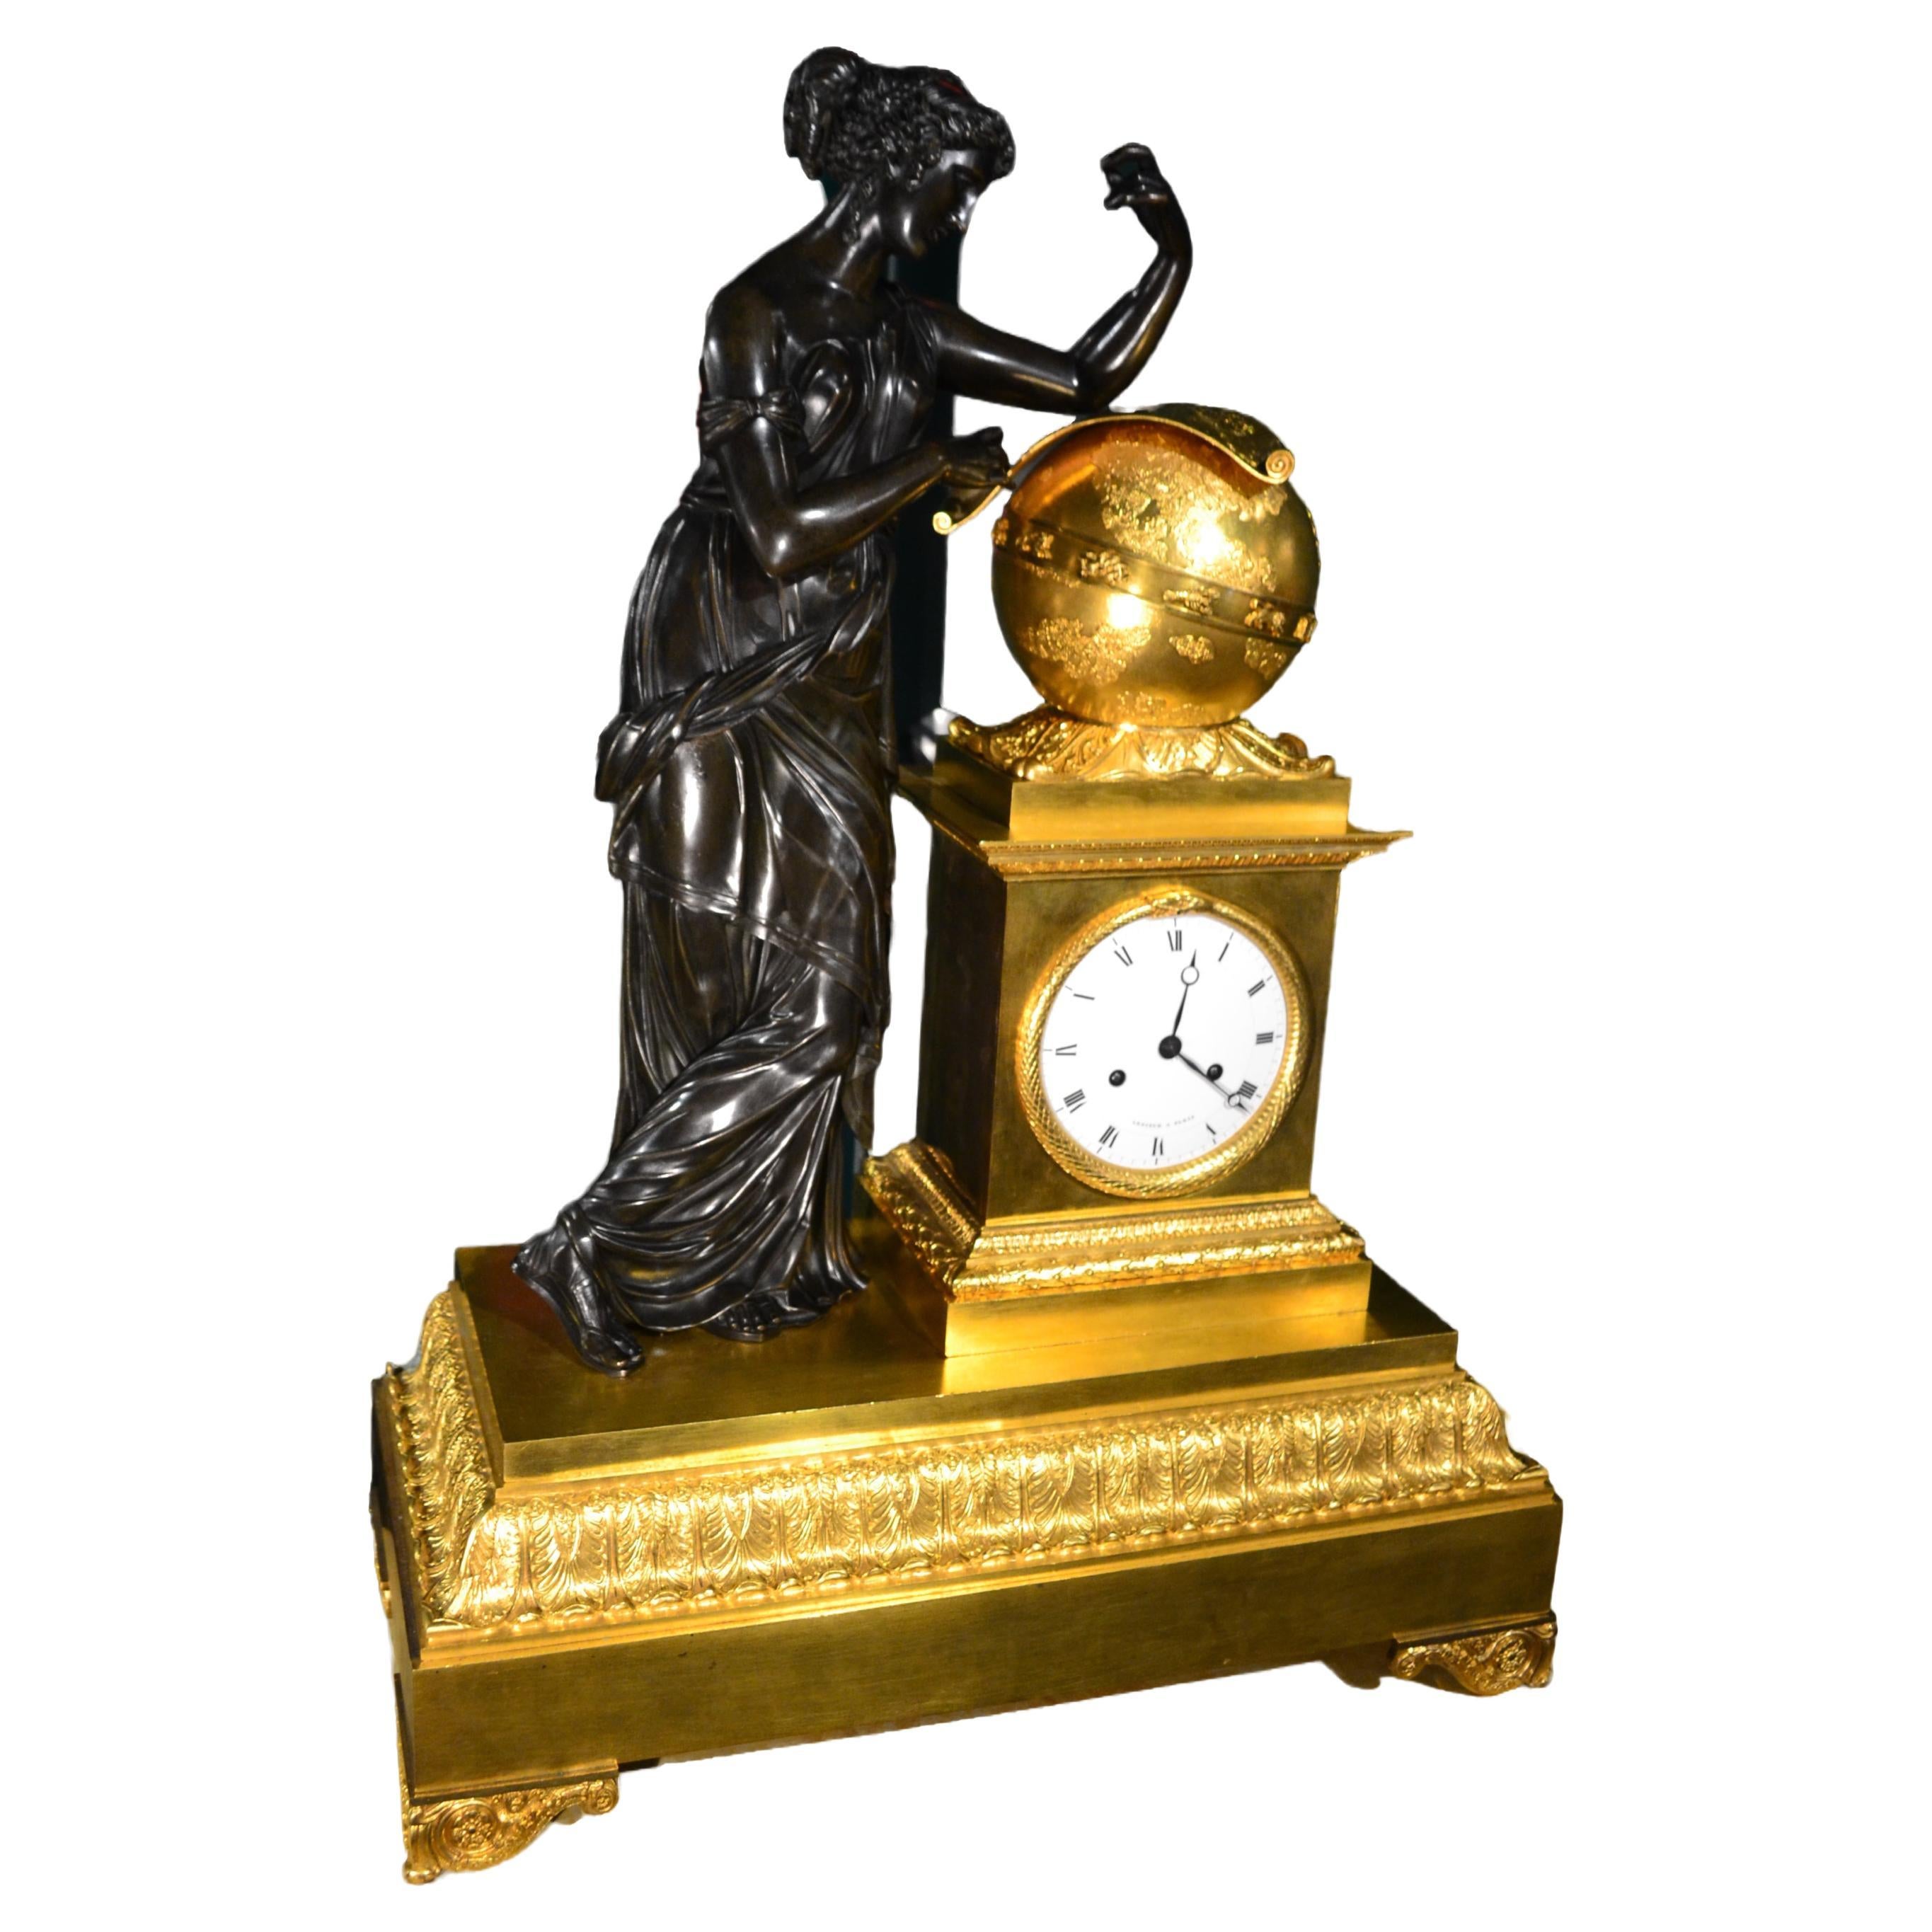 
Magnifique horloge de manteau en bronze doré et patiné d'époque Empire français représentant Urania, la muse grecque de l'astronomie, debout sur une base rectangulaire en bronze doré, son coude gauche reposant sur un grand globe céleste doré avec